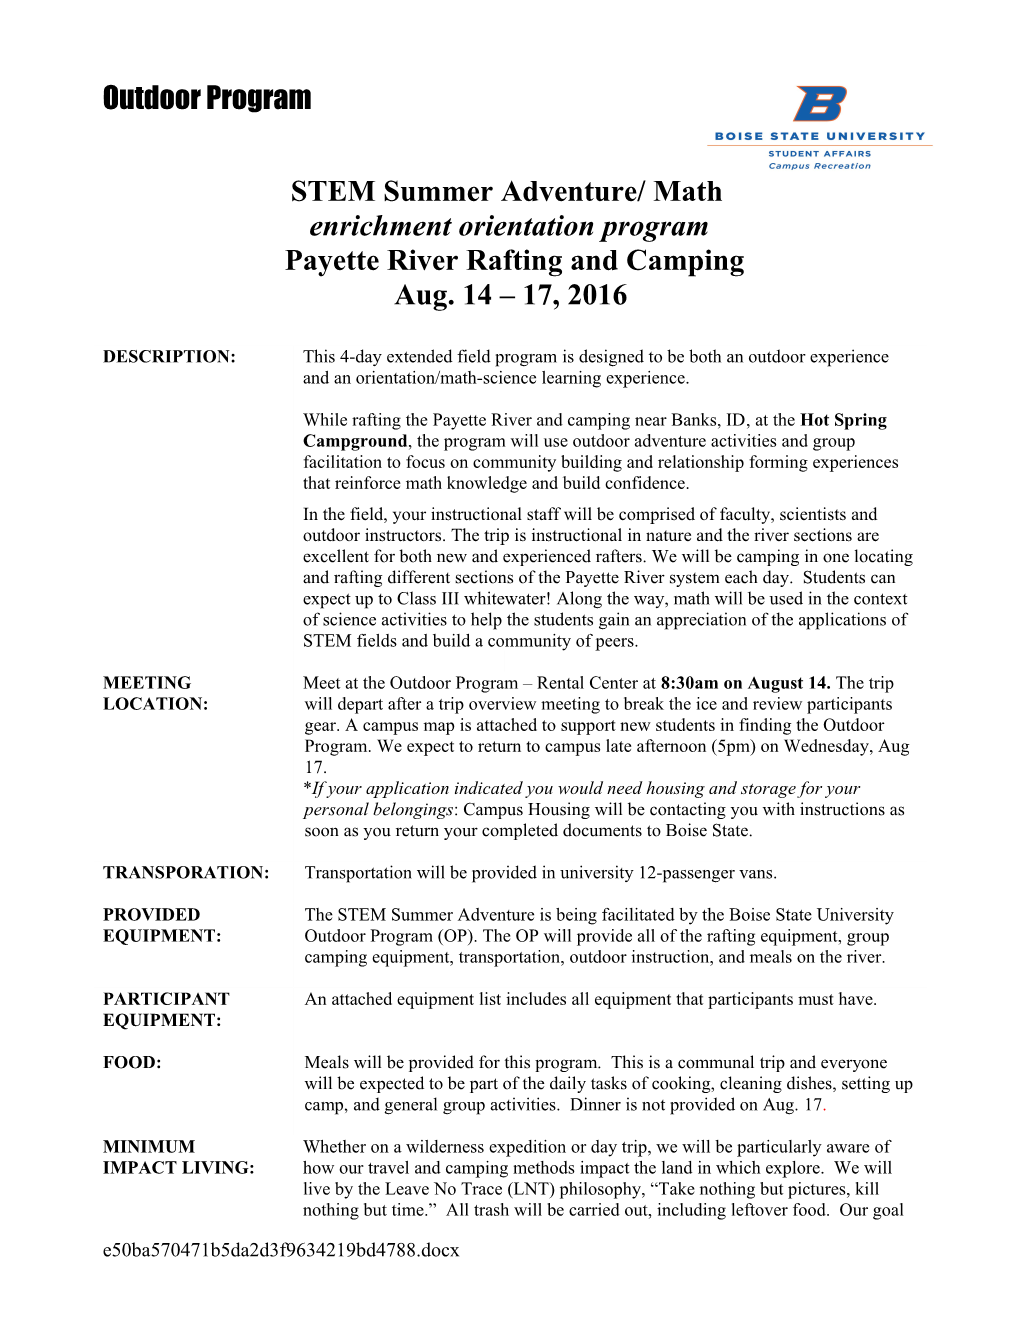 STEM Information Letter